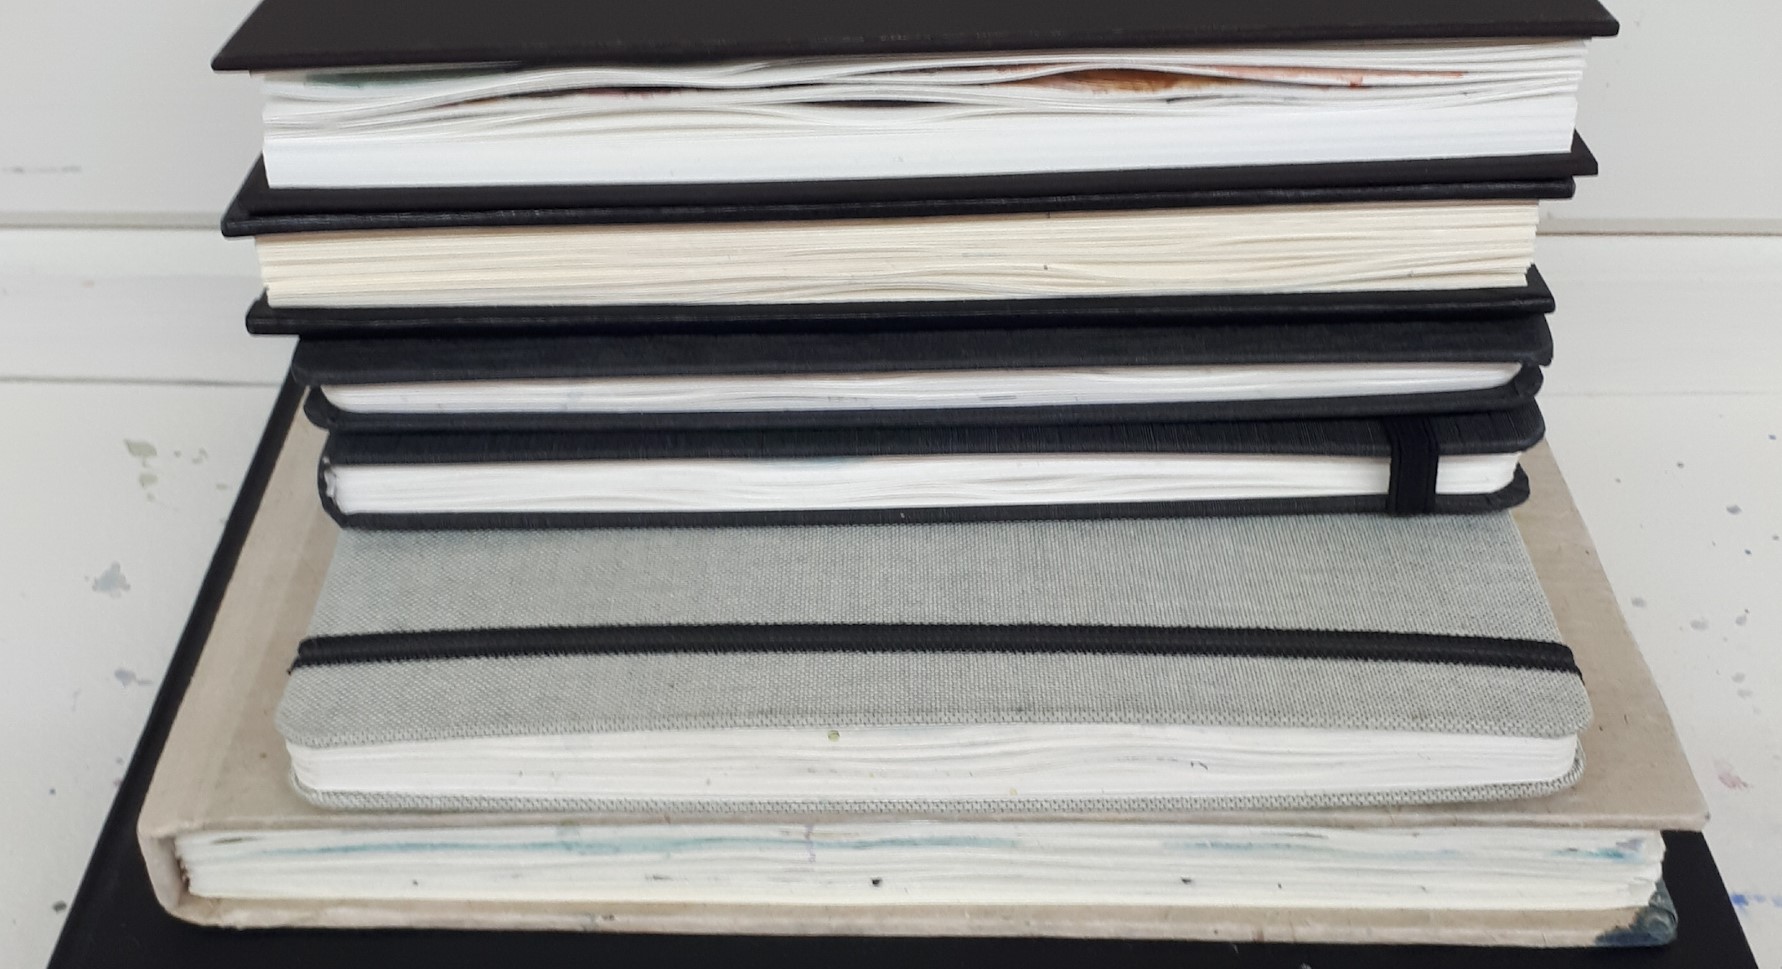 A pile of artist sketchbooks